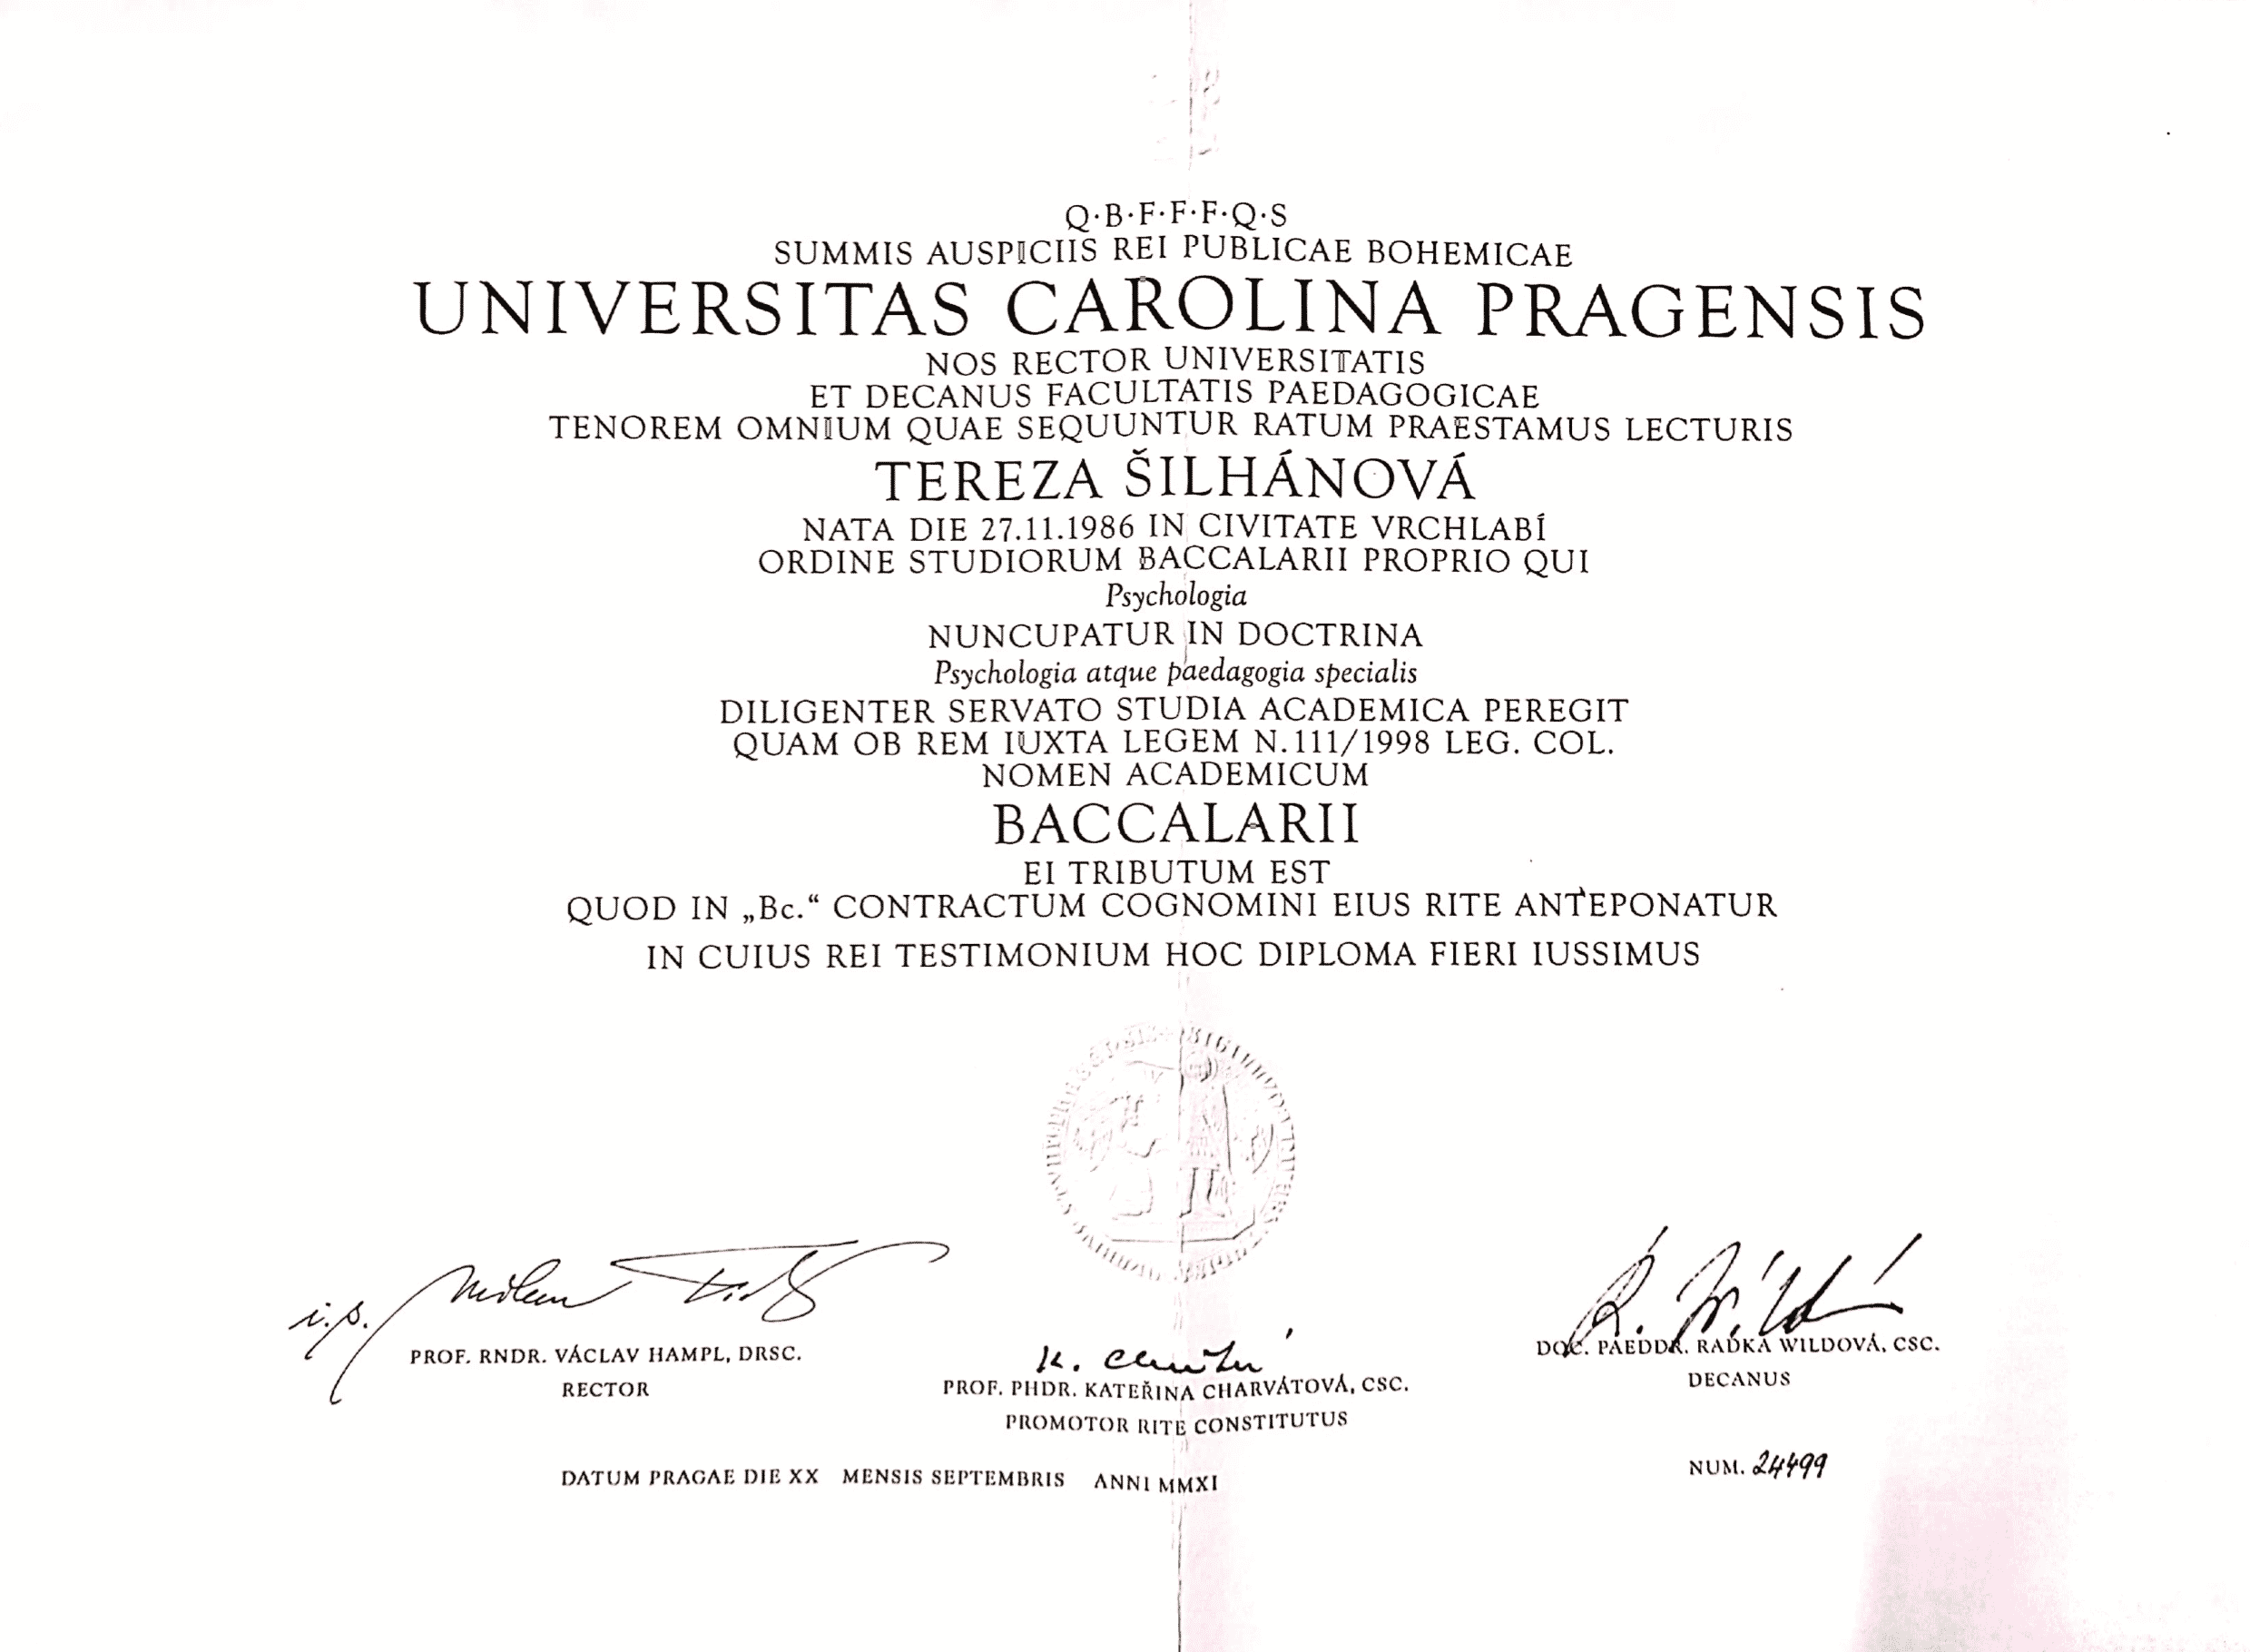 tereza_diplom